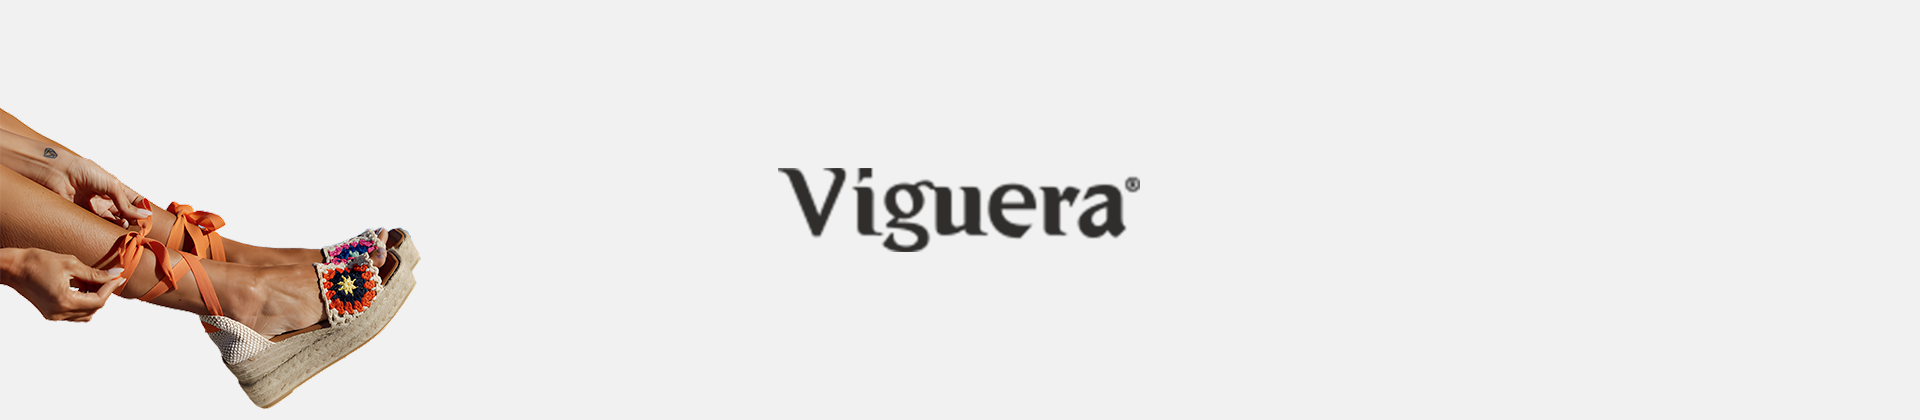 Viguera shoes Sign Online